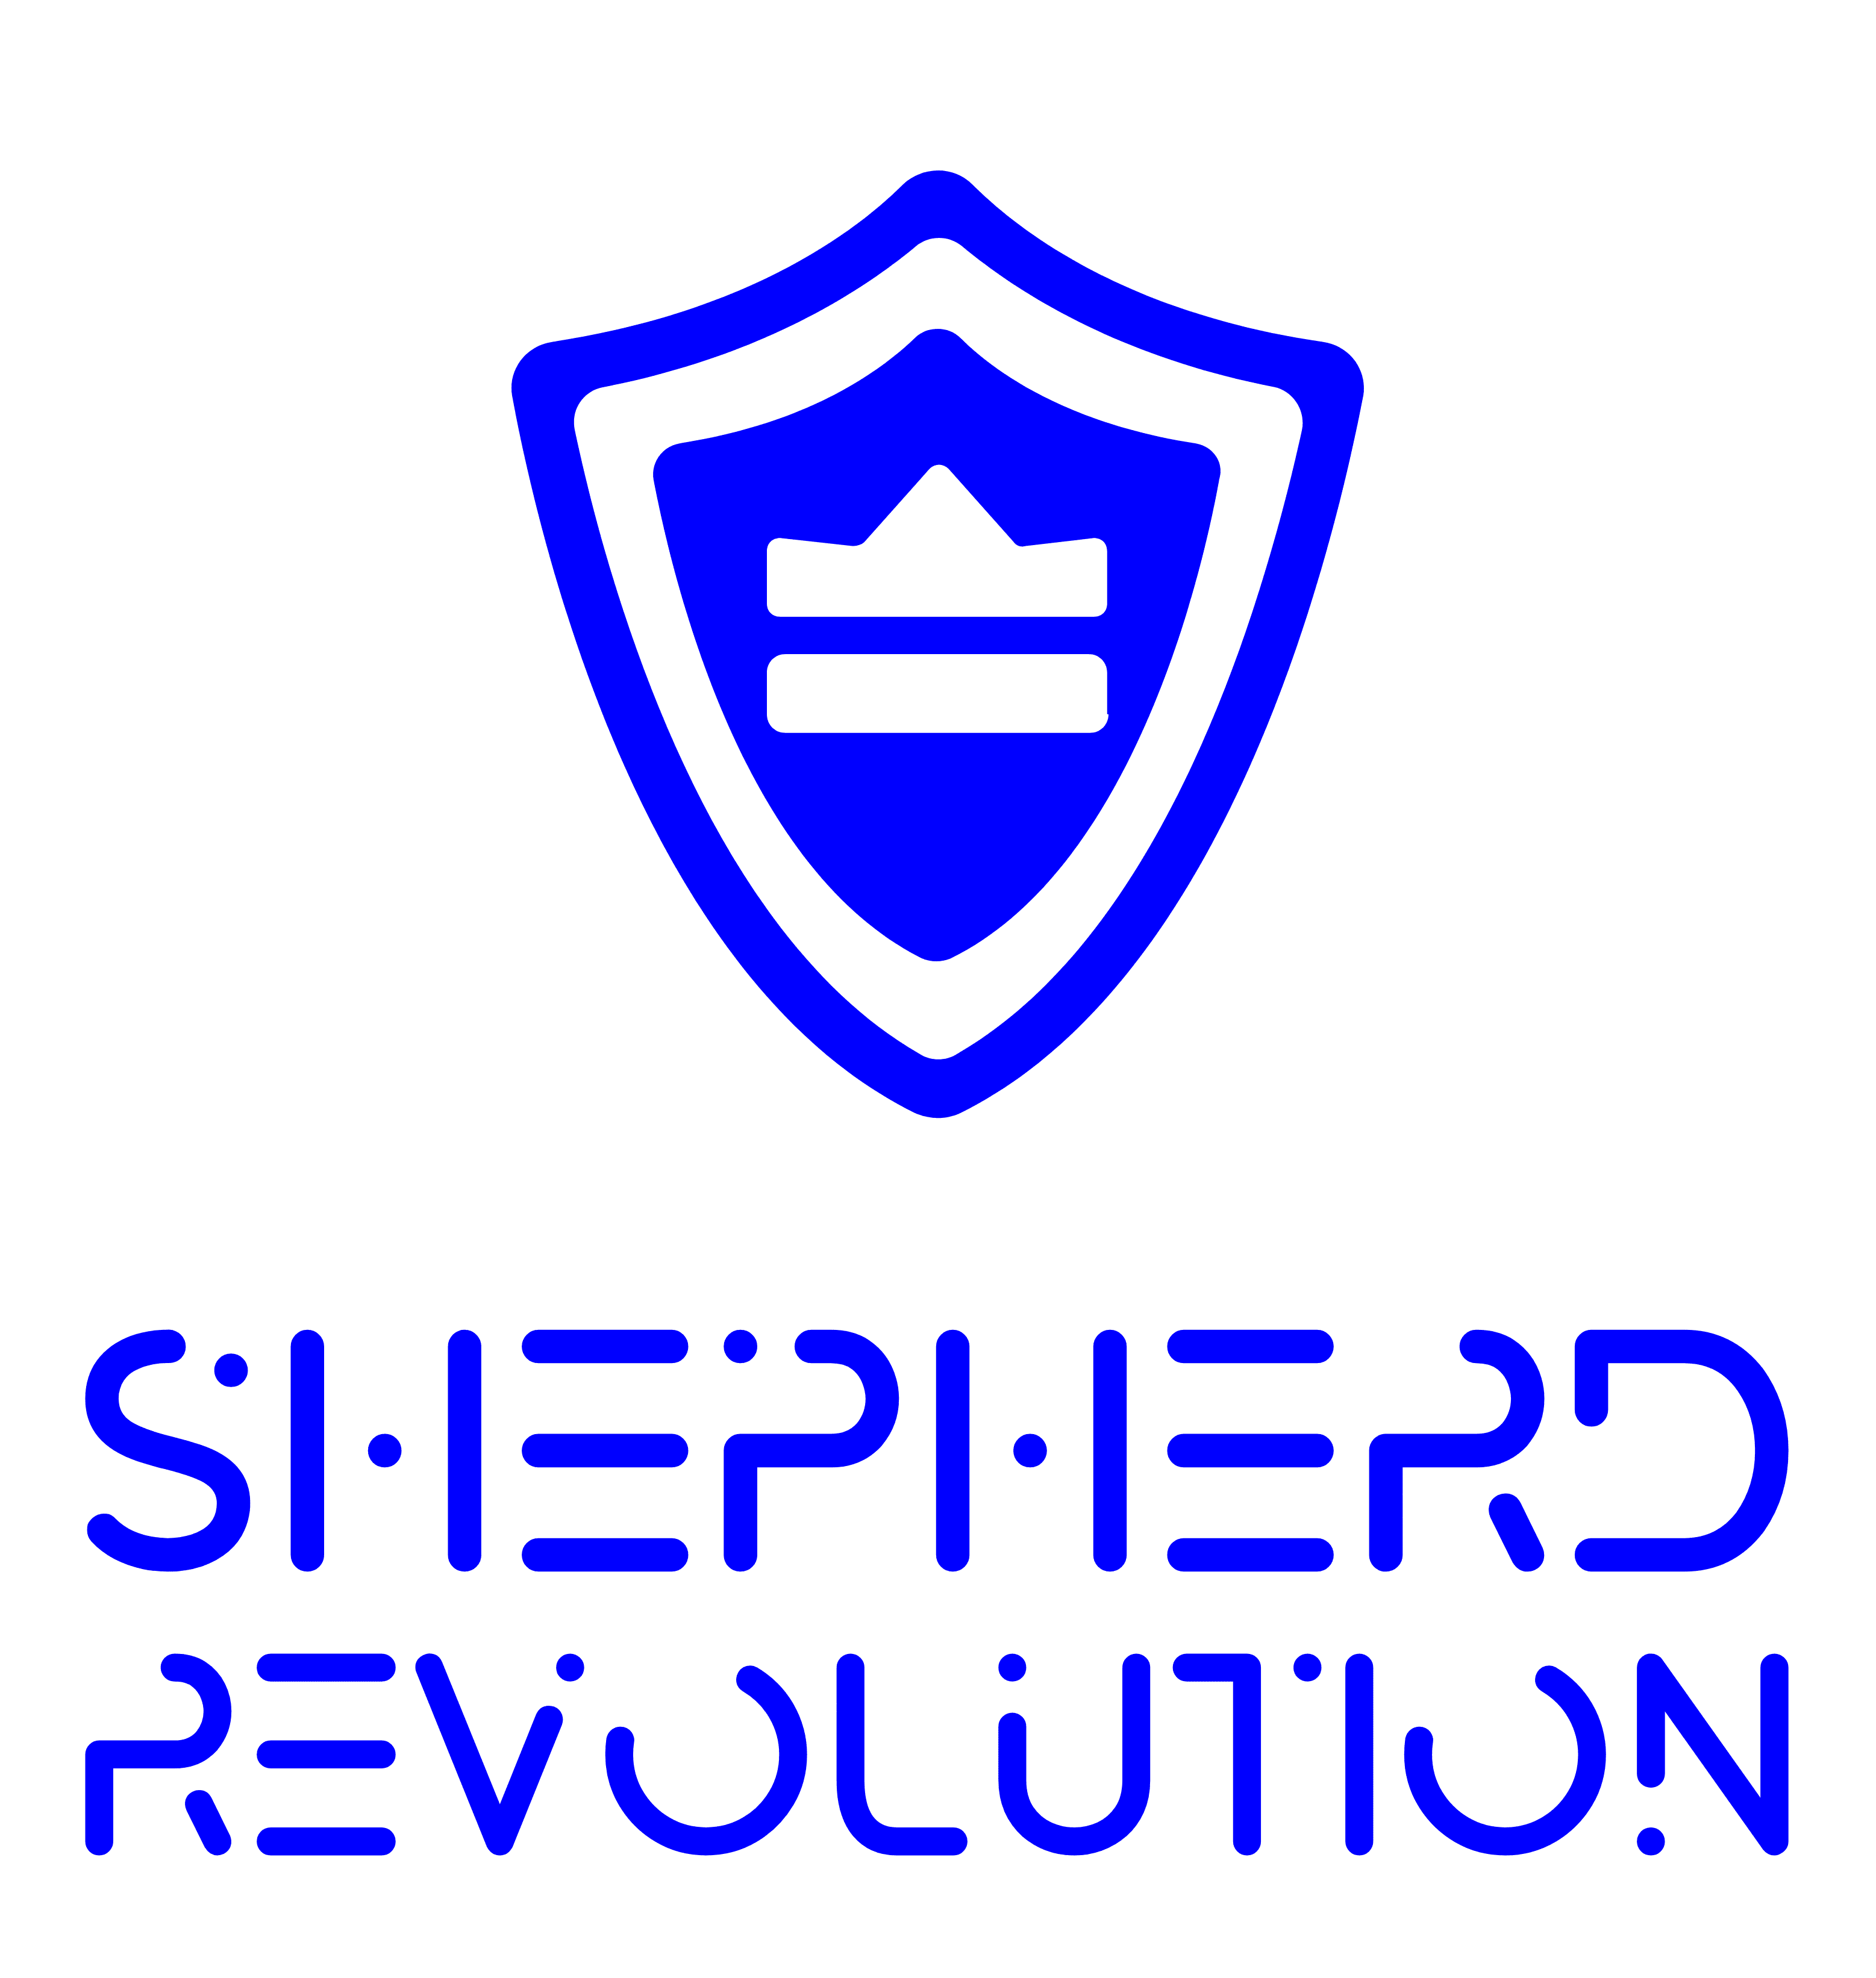 Shepherd Revolution